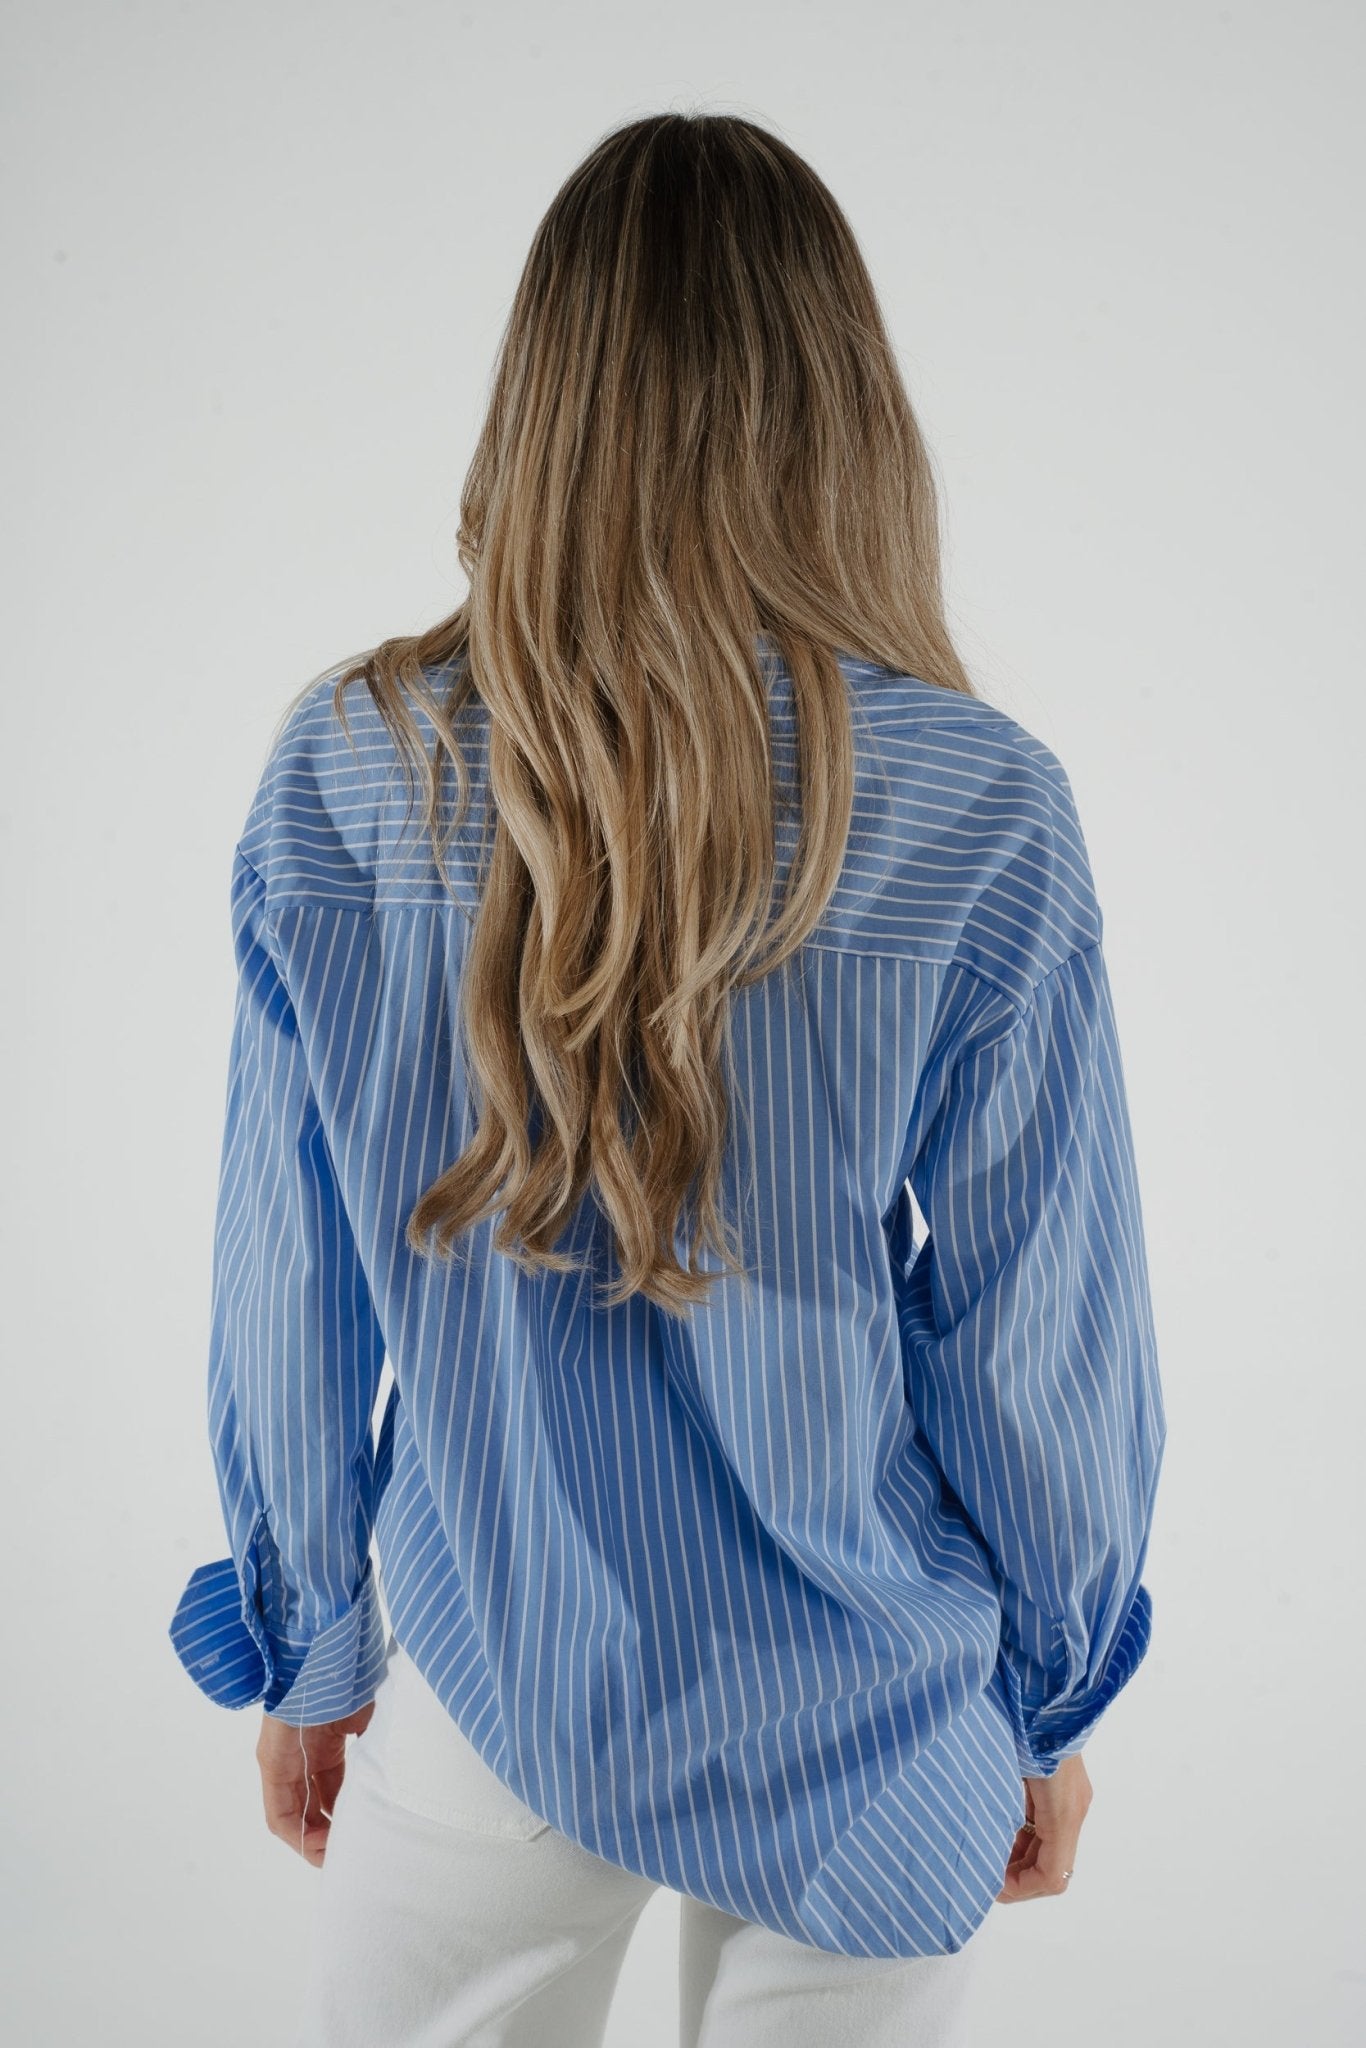 Lila Pinstripe Shirt In Blue - The Walk in Wardrobe